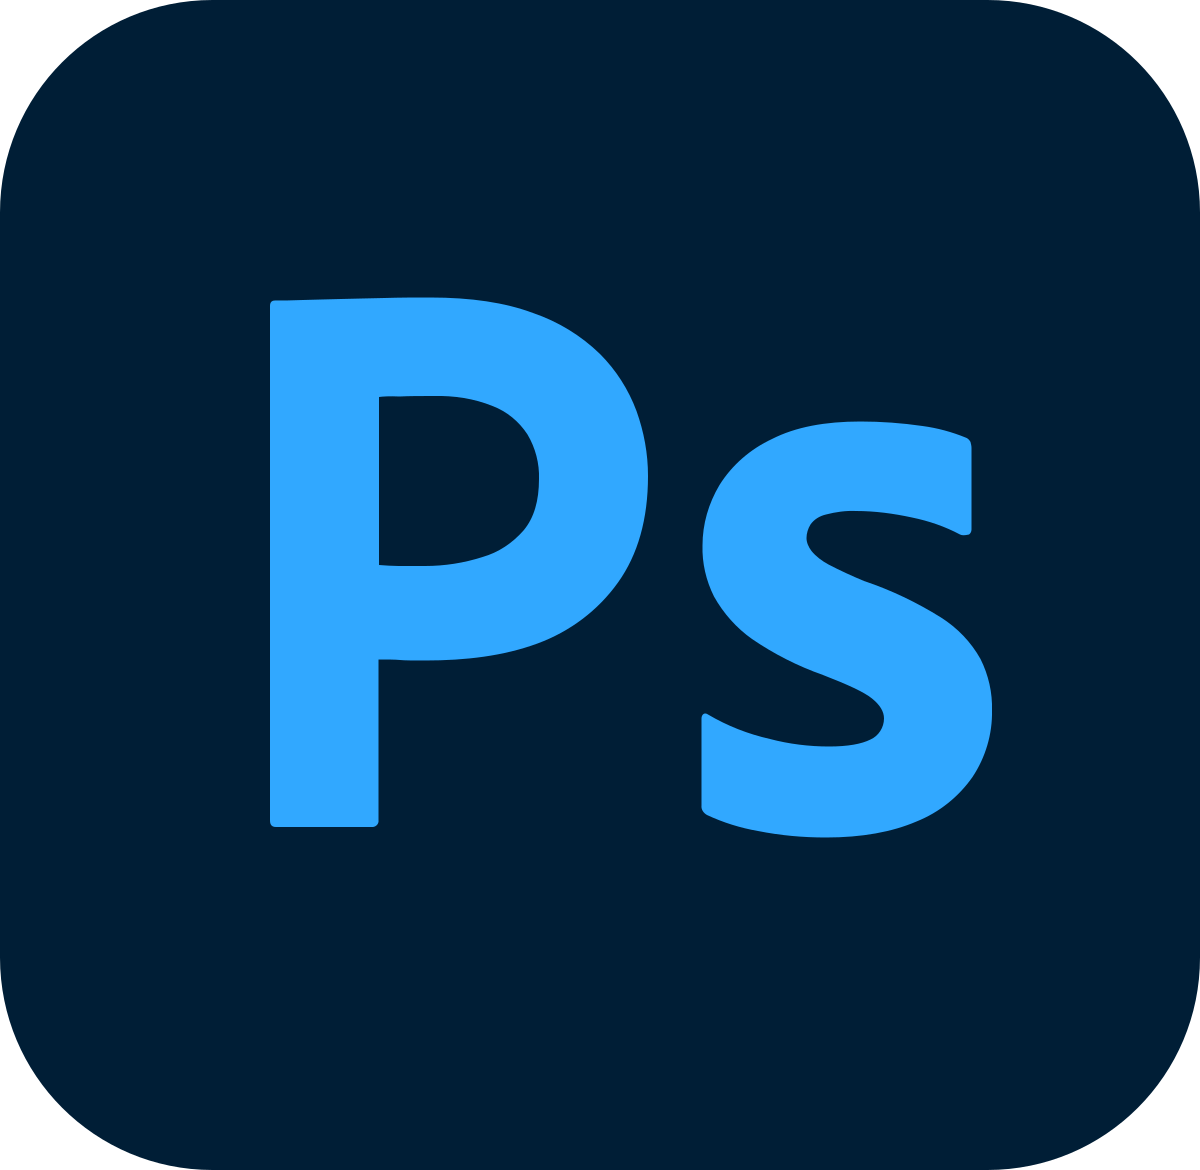 دوره آموزش نرم افزار Adobe Photoshop (کاربردی) از مبتدی تا پیشرفته – بخش اول